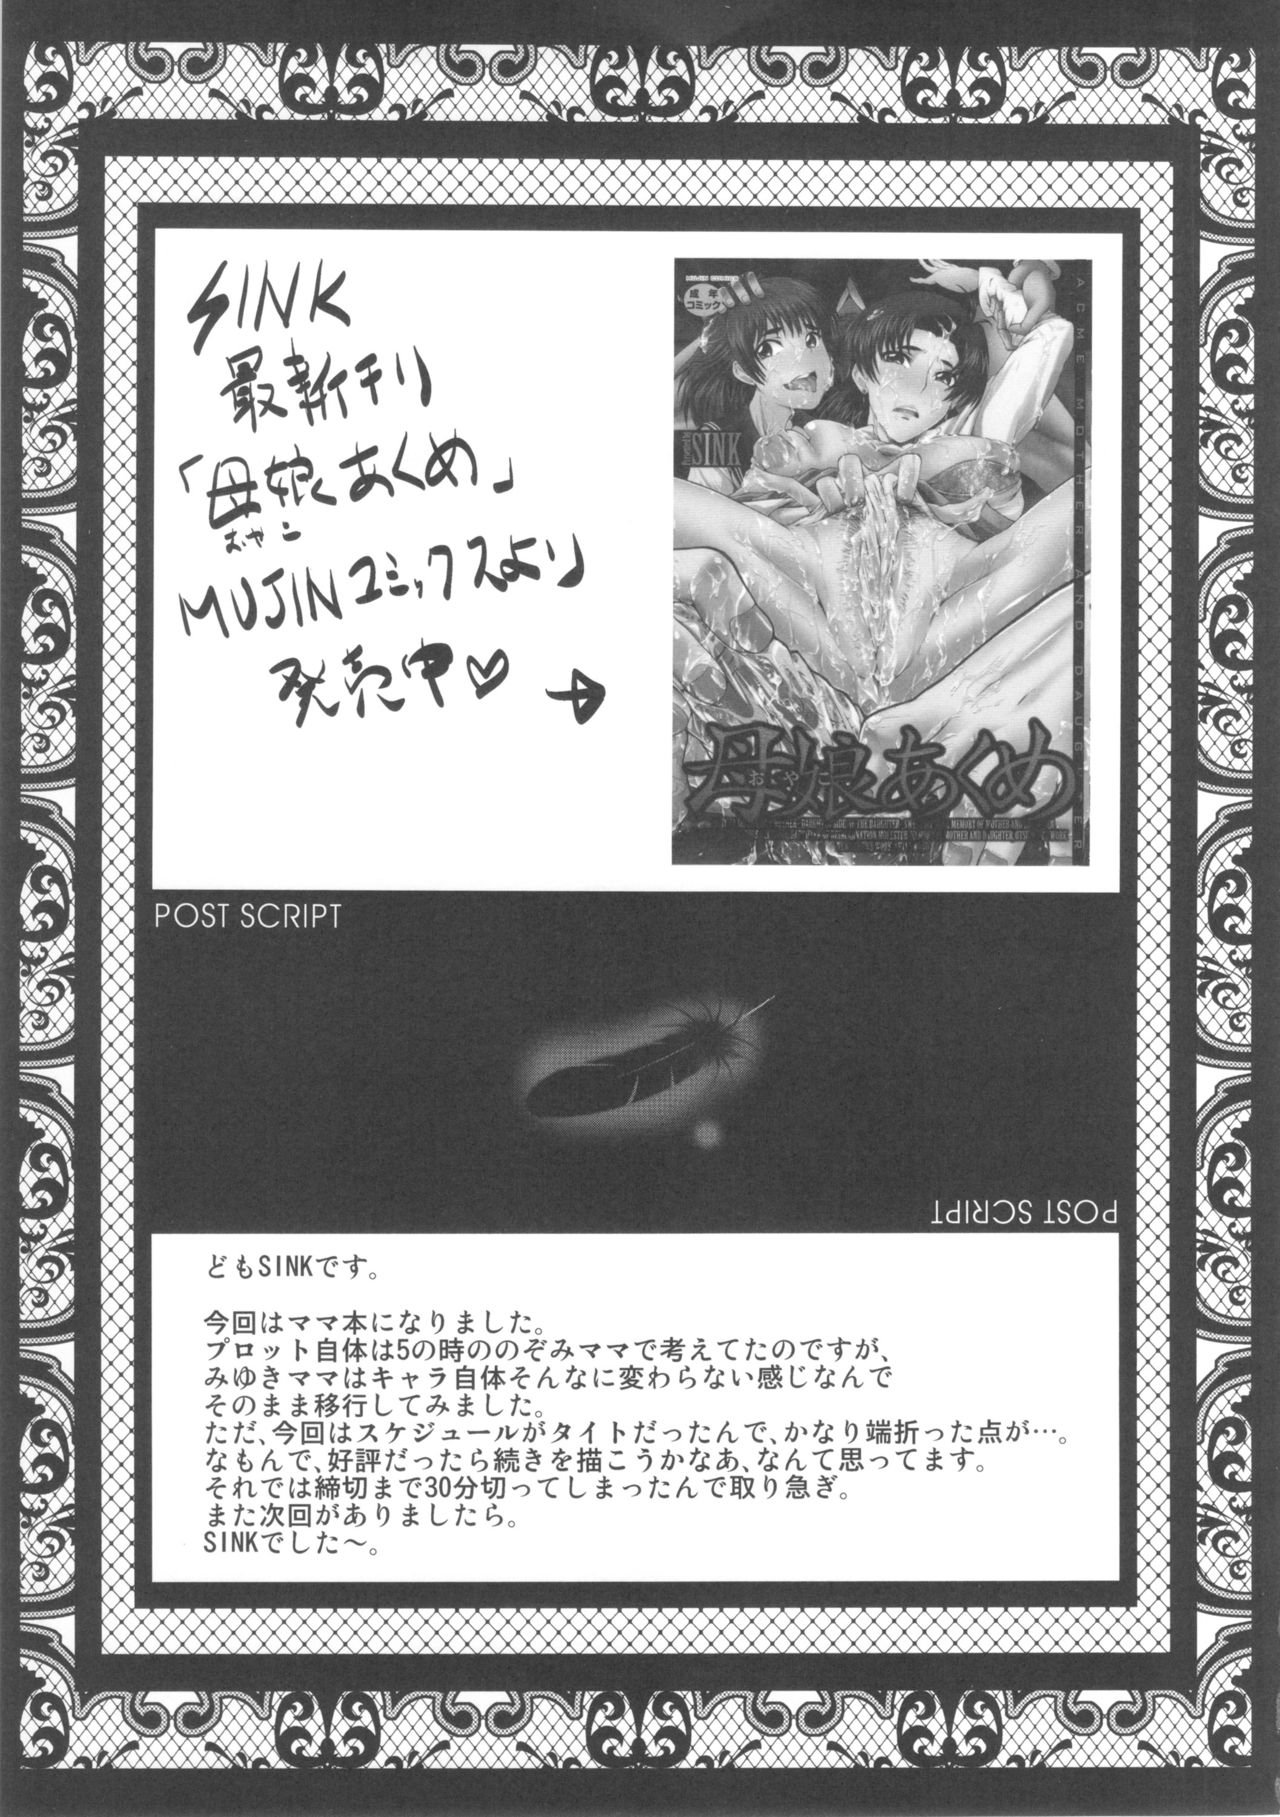 (C83) [Urakata Honpo (SINK)] Urabambi Vol. 46 Mess-Mother ~Ijou Seiyoku ni Aragaenai Inbo~ (Smile Precure!) (C83) [裏方本舗 (SINK)] ウラバンビvol.46 牝母(MESS-MOTHER) ～異常性欲に抗えない淫母～ (スマイルプリキュア!)